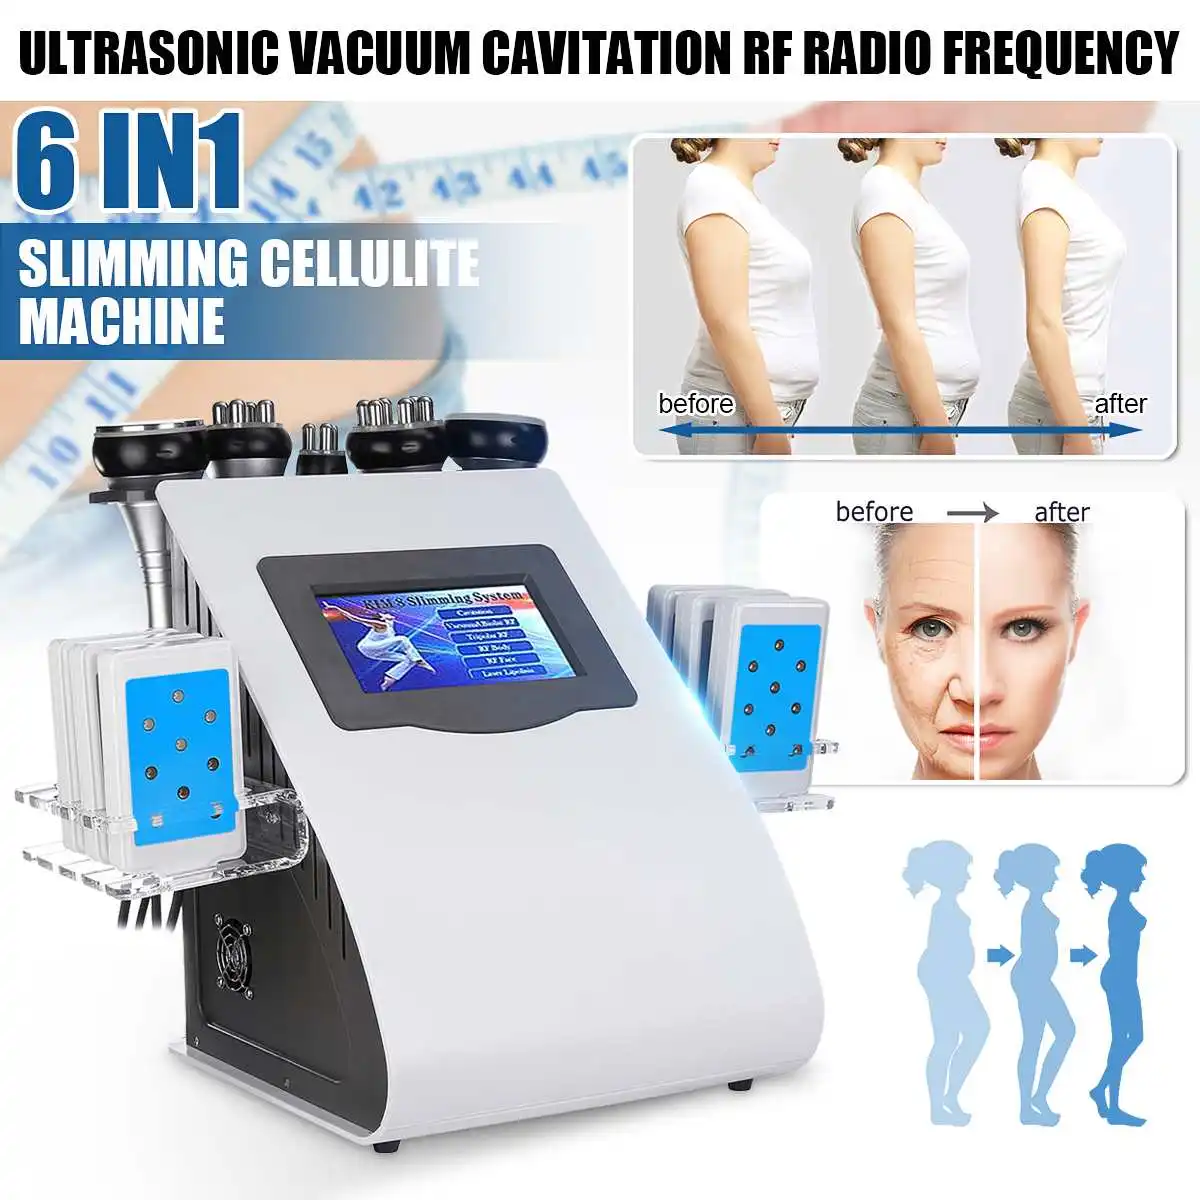 Ультразвуковая вакуумная Кавитация RF радиочастотная машина для похудения тела 6в1 для подтяжки кожи уход за телом вес Loos